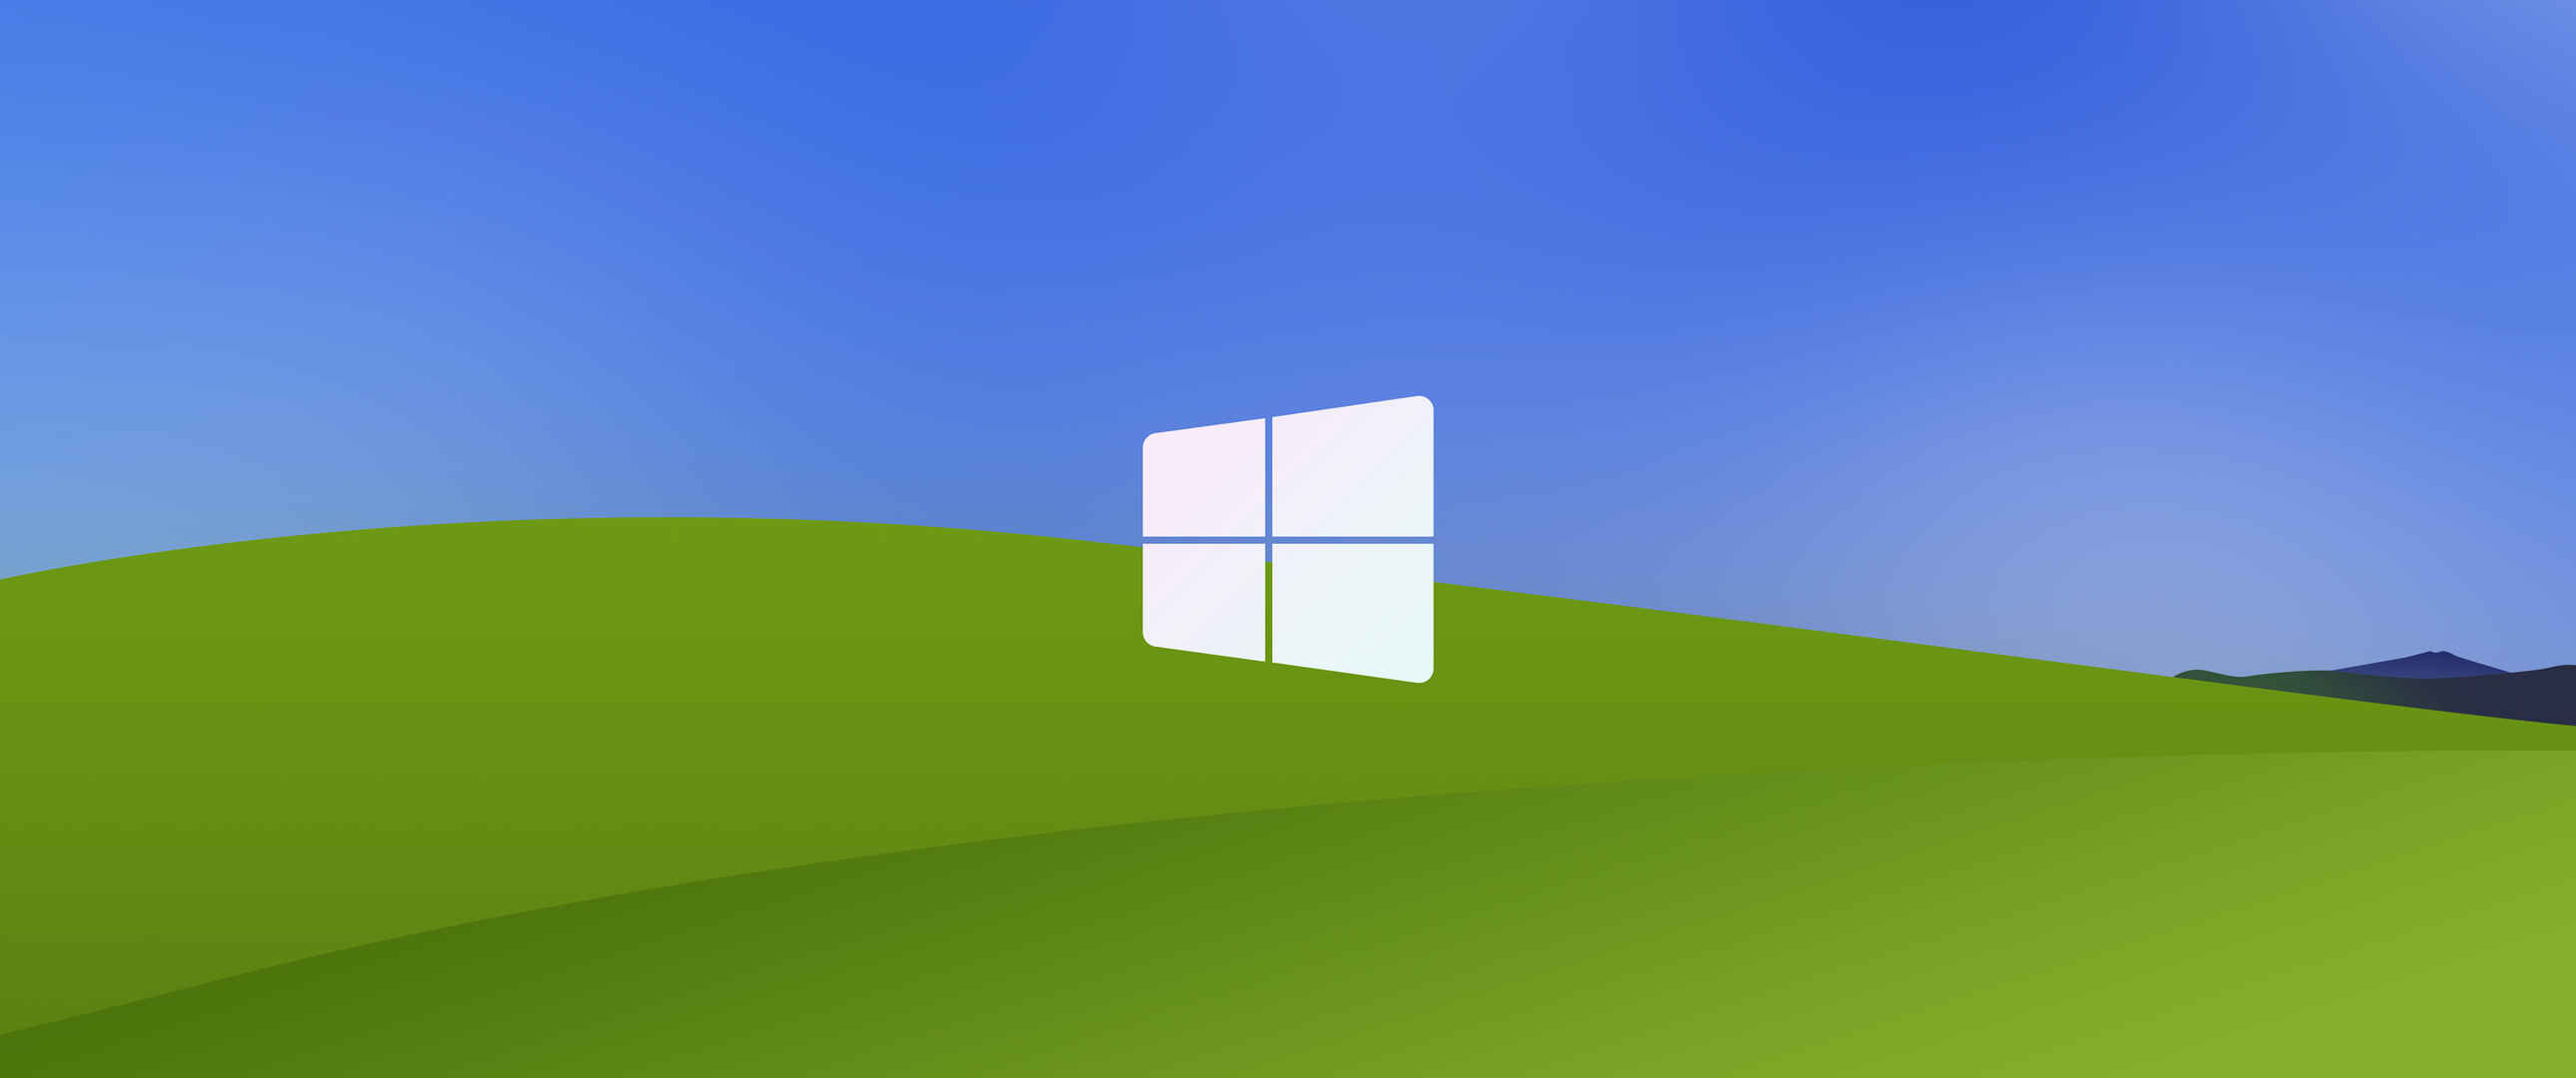 简约蓝天白云 Windows XP  3440x1440带鱼屏壁纸-